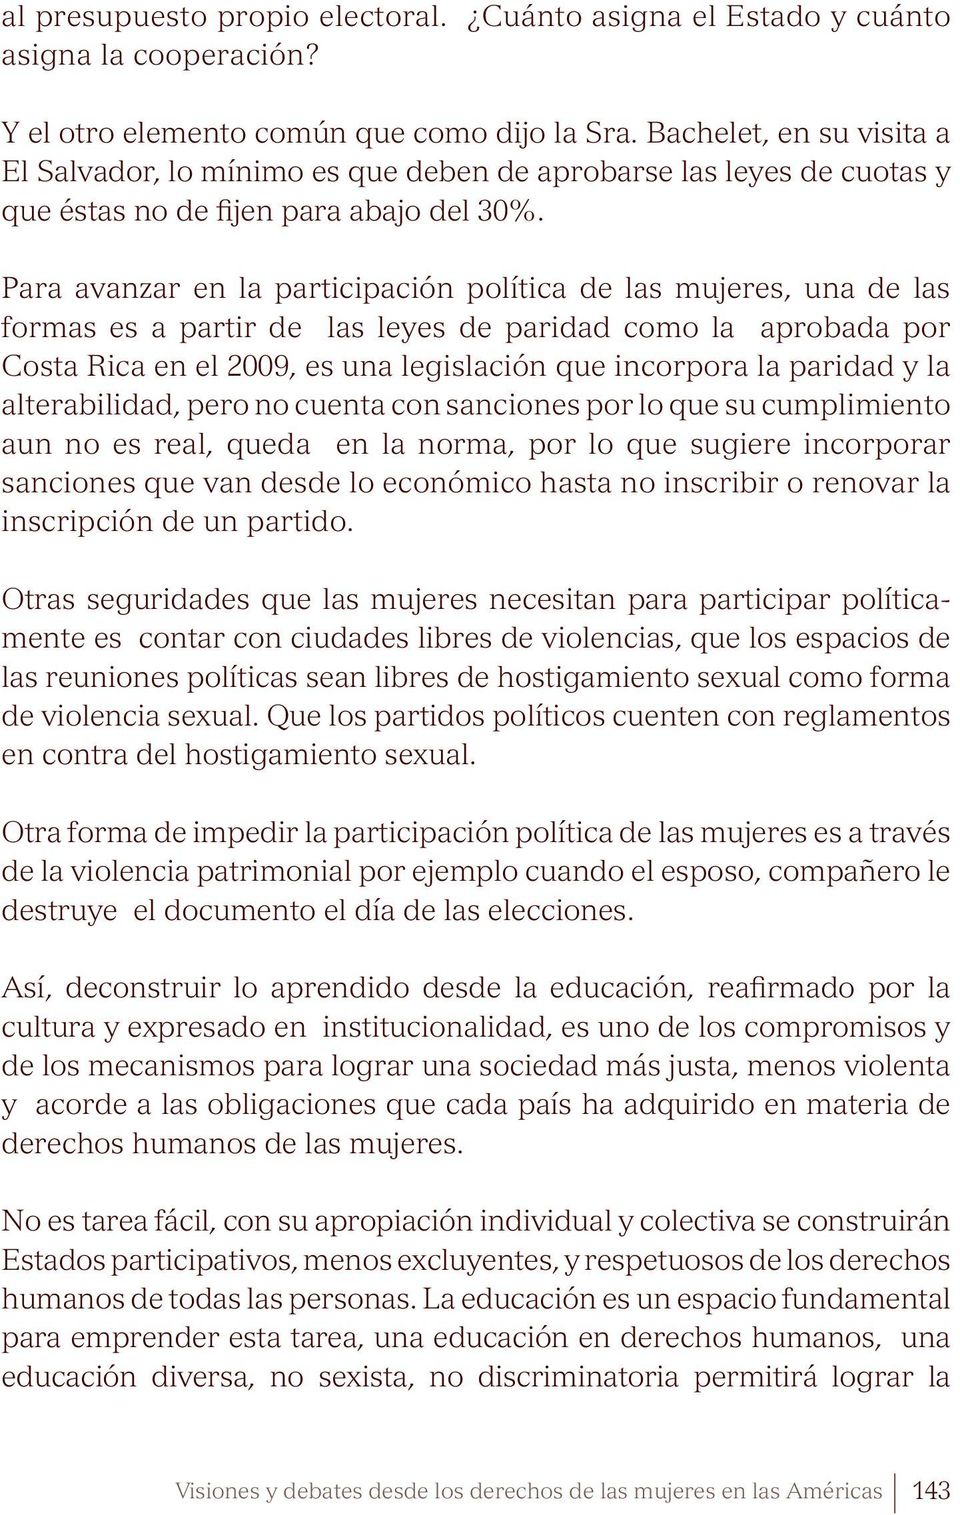 Para avanzar en la participación política de las mujeres, una de las formas es a partir de las leyes de paridad como la aprobada por Costa Rica en el 2009, es una legislación que incorpora la paridad